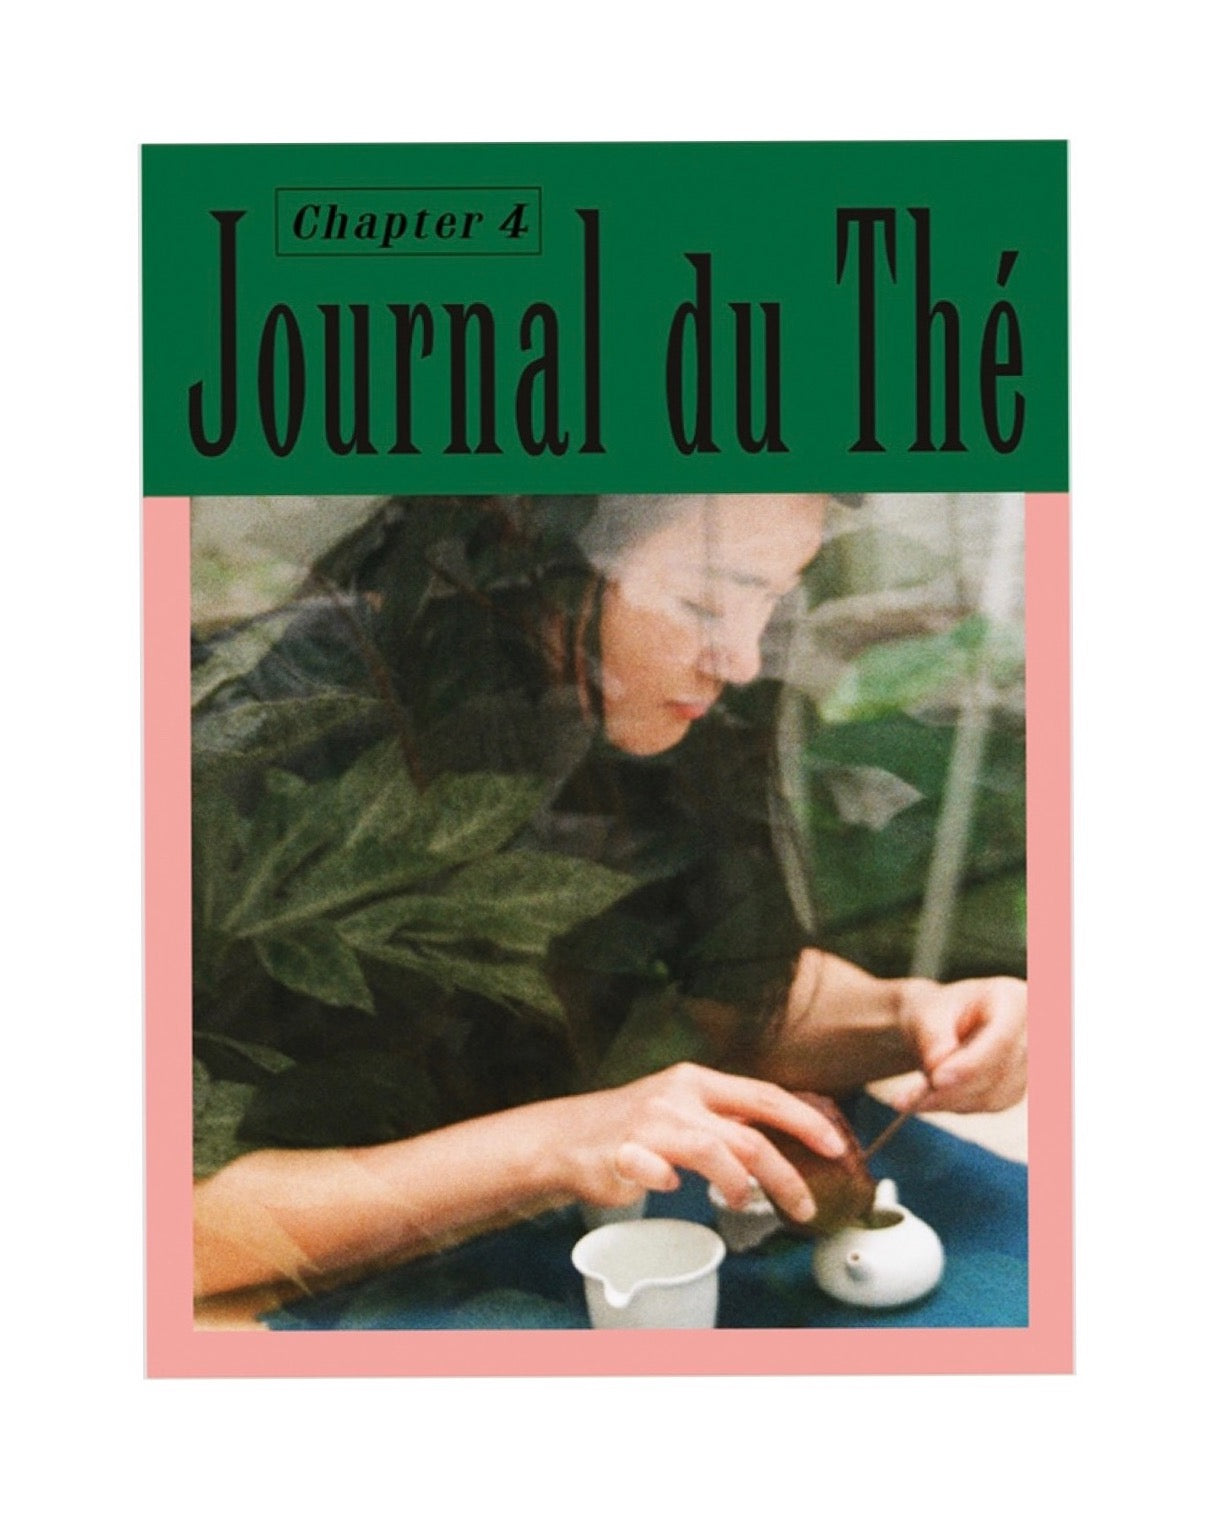 Journal du Thé Publication